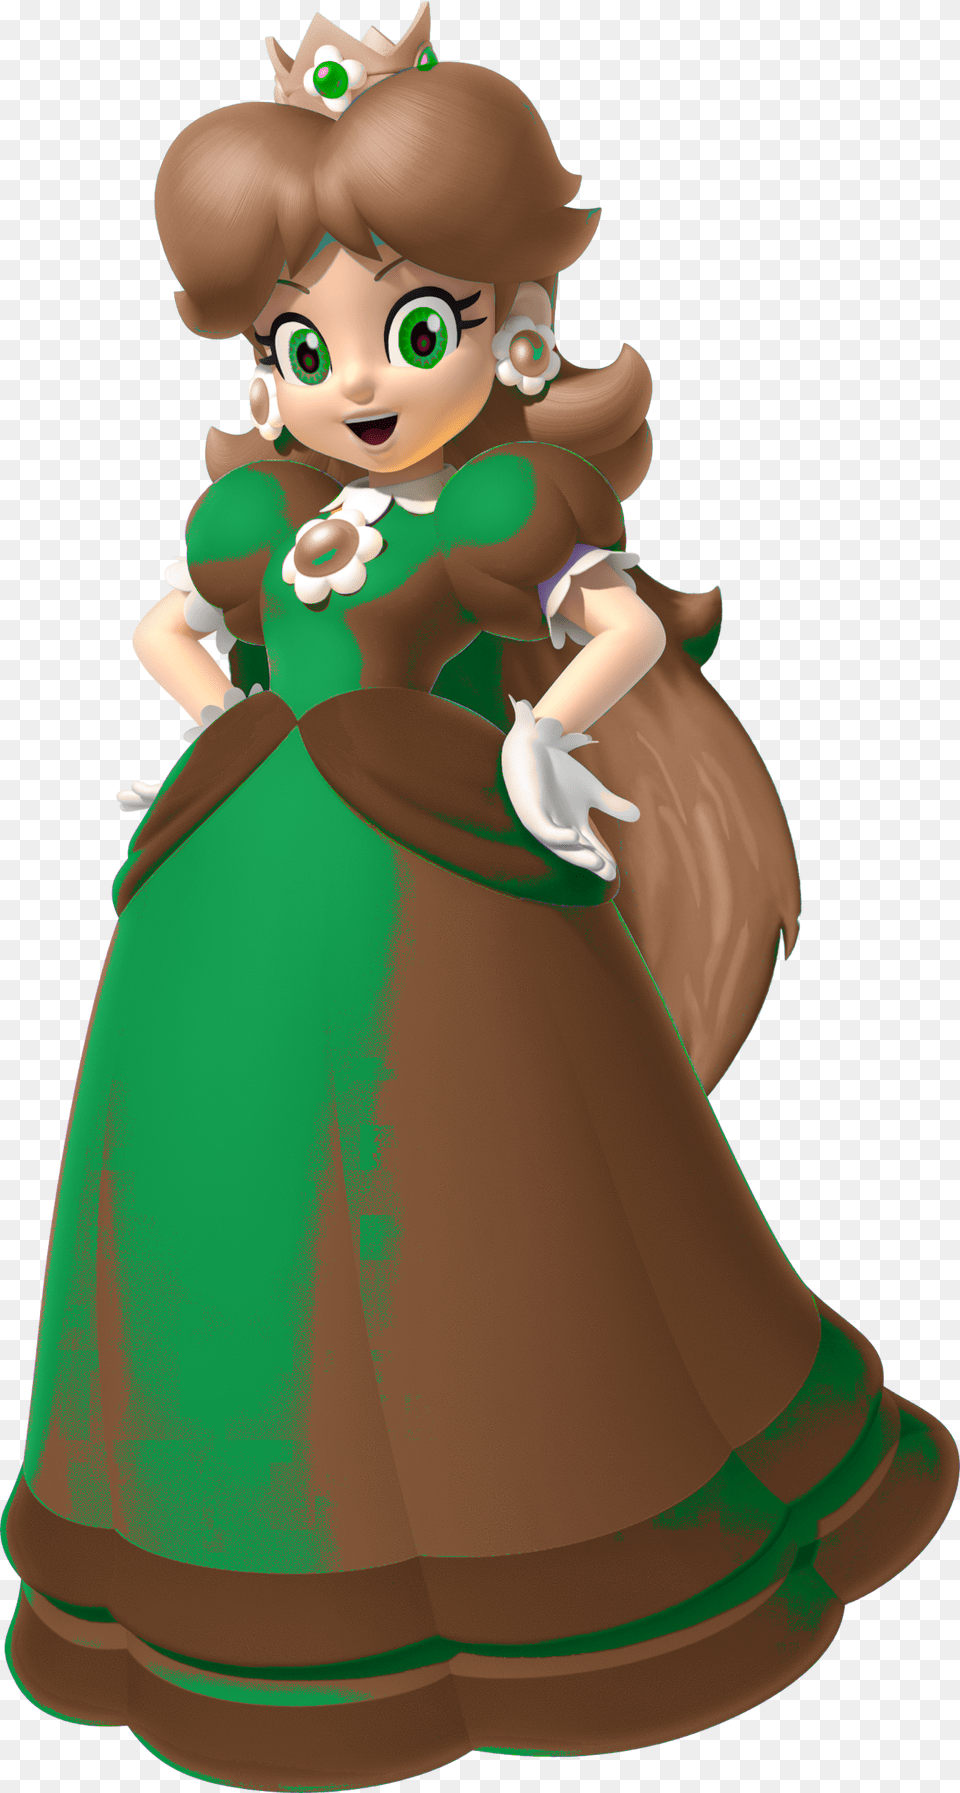 Nintendo Amiibo Daisy Princess Daisy Mario Kart, Fashion, Clothing, Dress, Toy Free Png